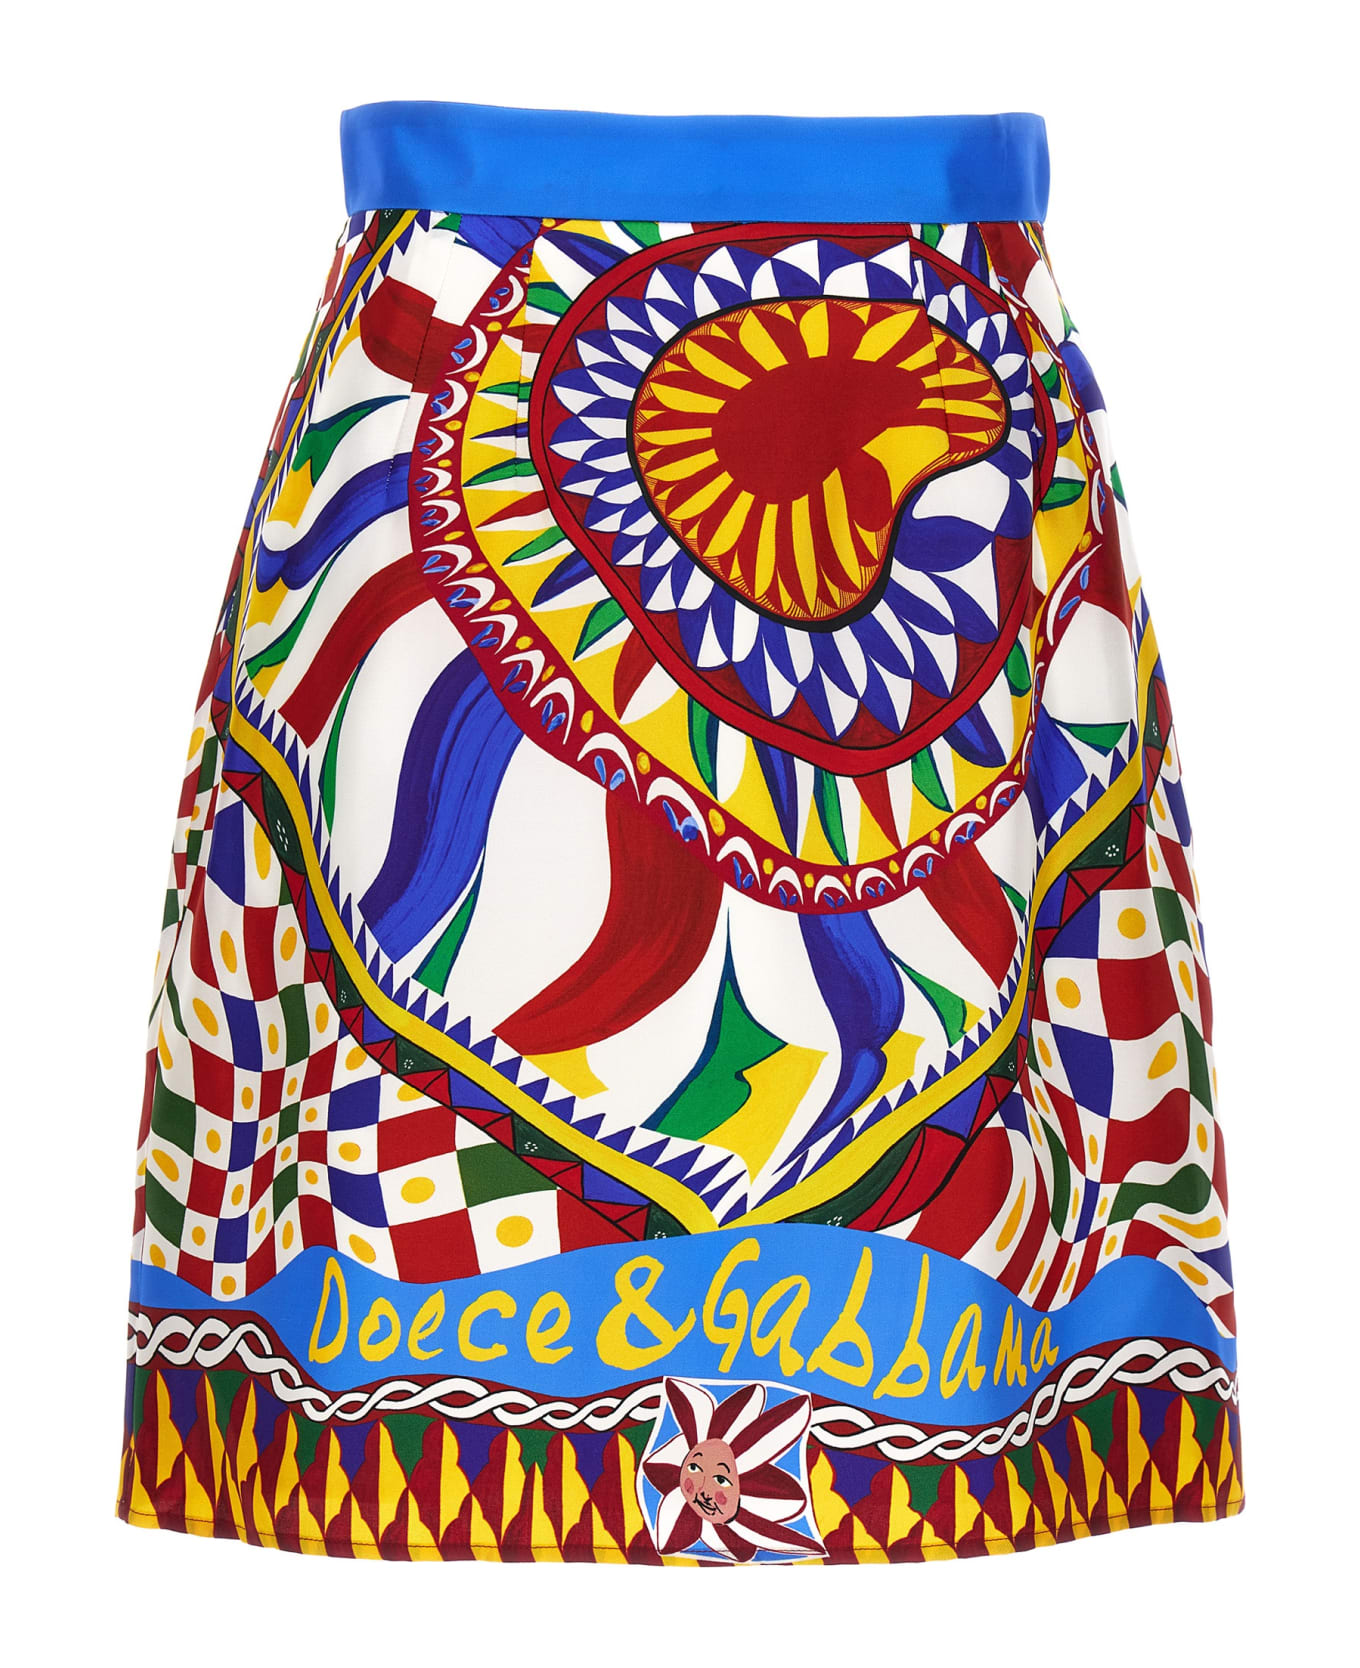 Dolce & Gabbana Carretto Skirt - Multicolor スカート